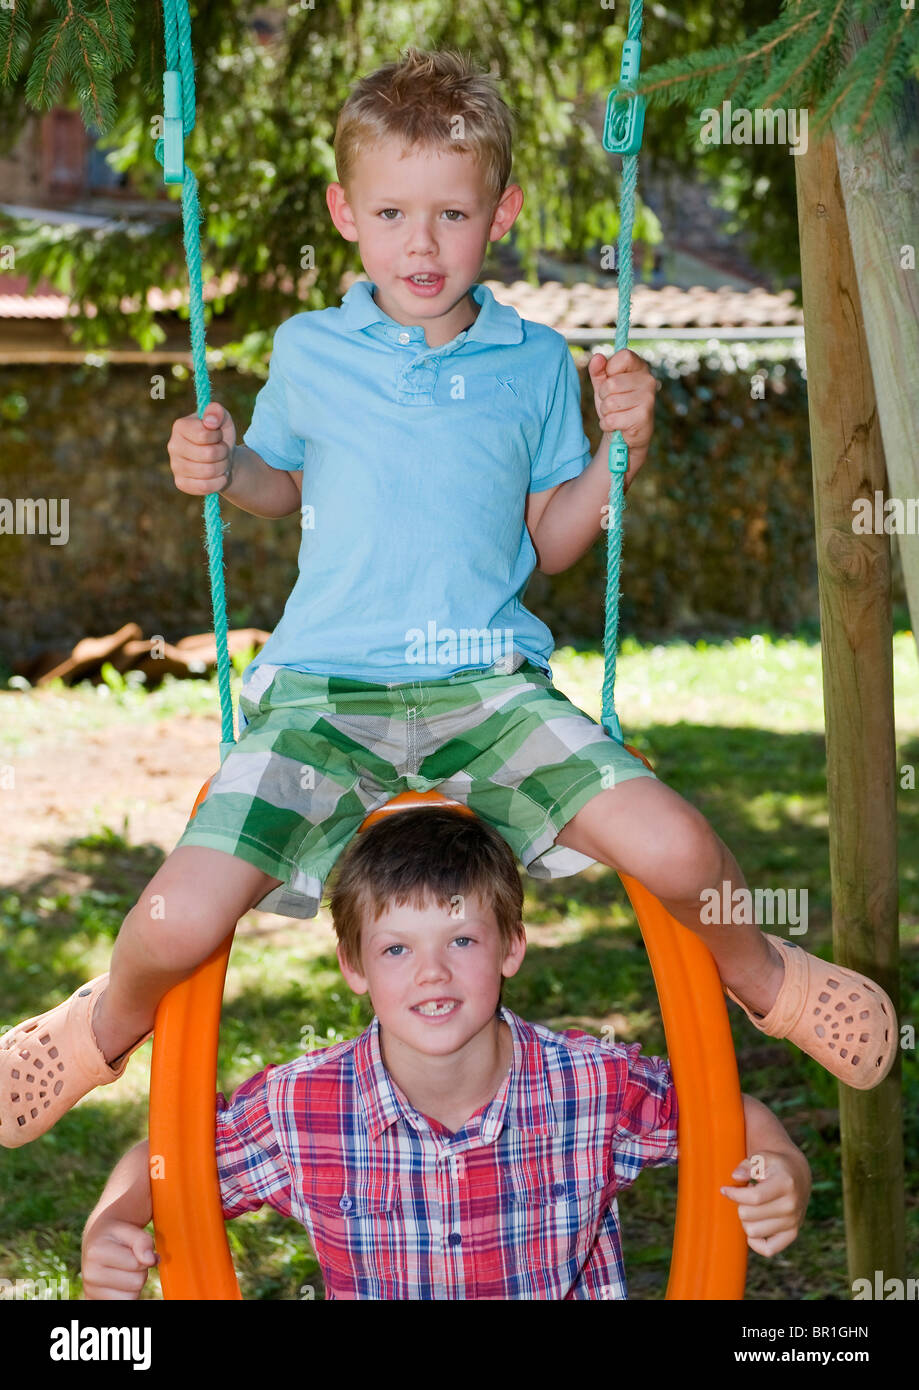 Deux jeunes garçons jouant sur une balançoire Banque D'Images